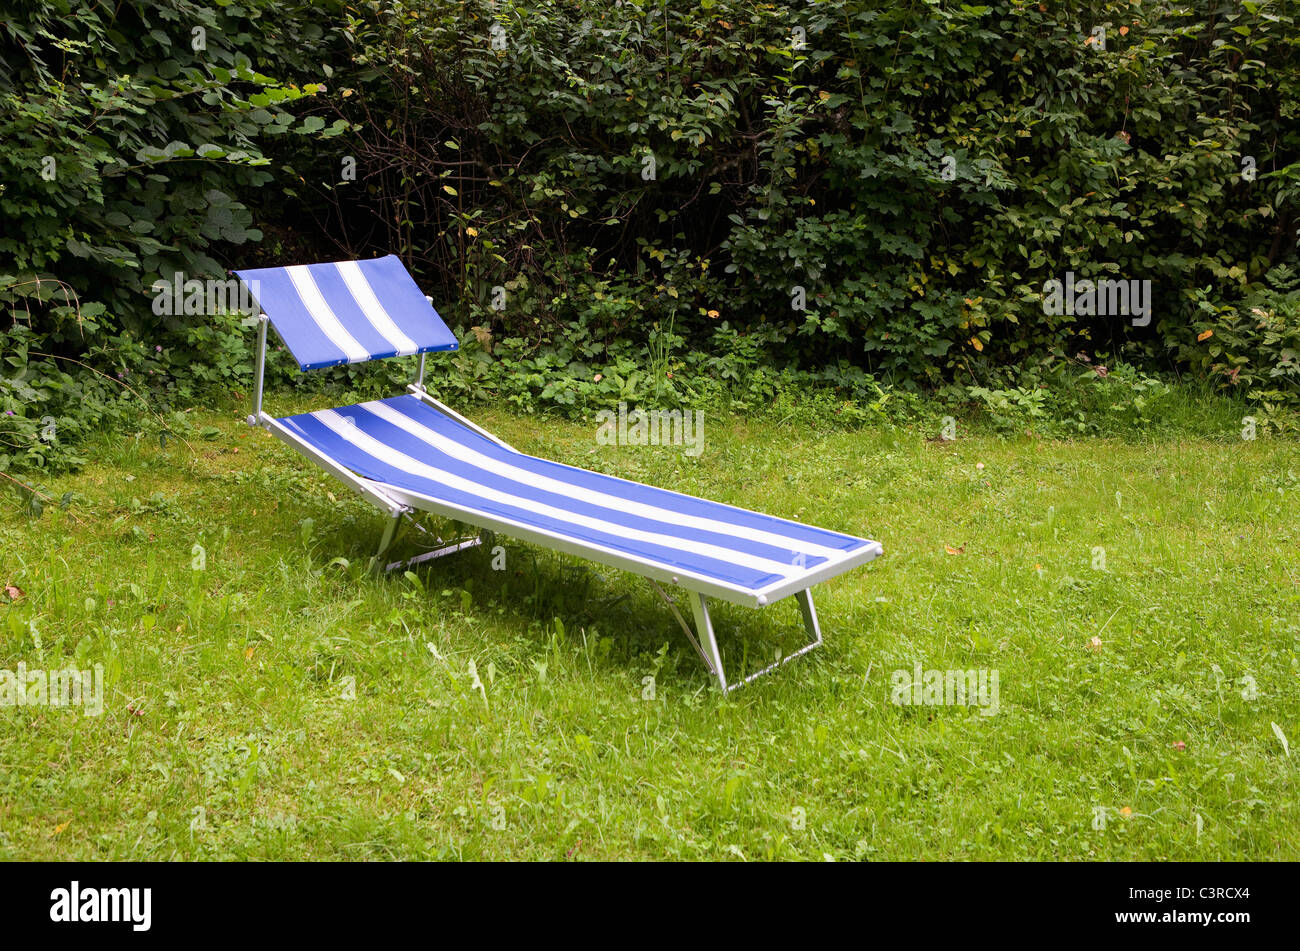 Austria, Land Salzburg, Wallersee, View of beach chair in garden Stock Photo